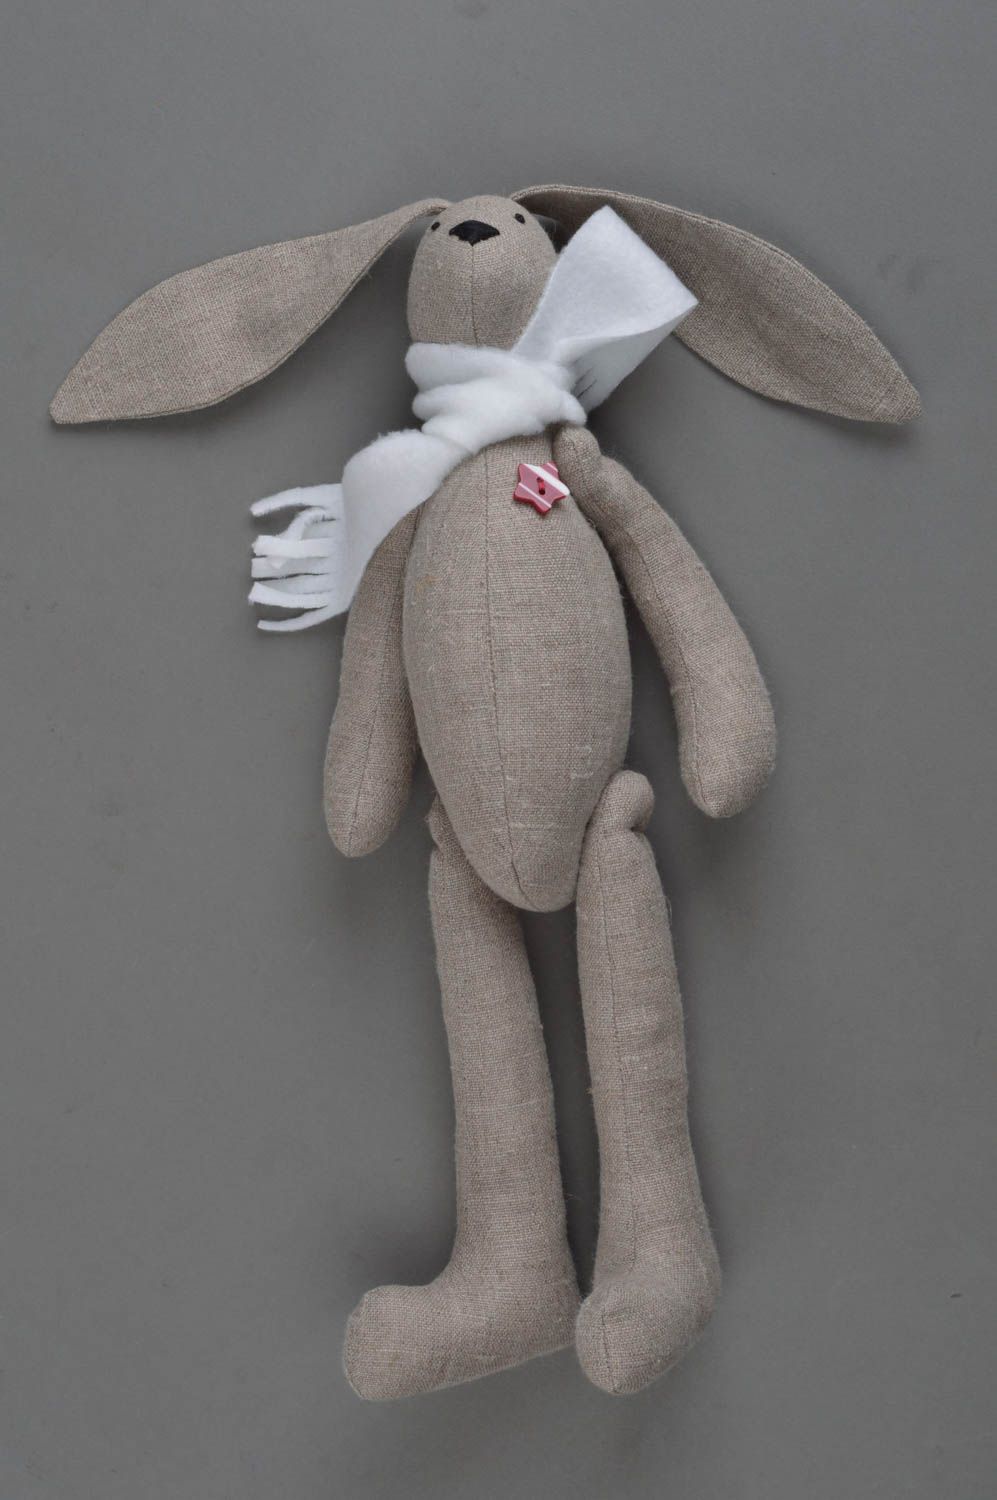 Авторская мягкая игрушка в виде серого ушастого зайца из льна ручная работа  фото 3